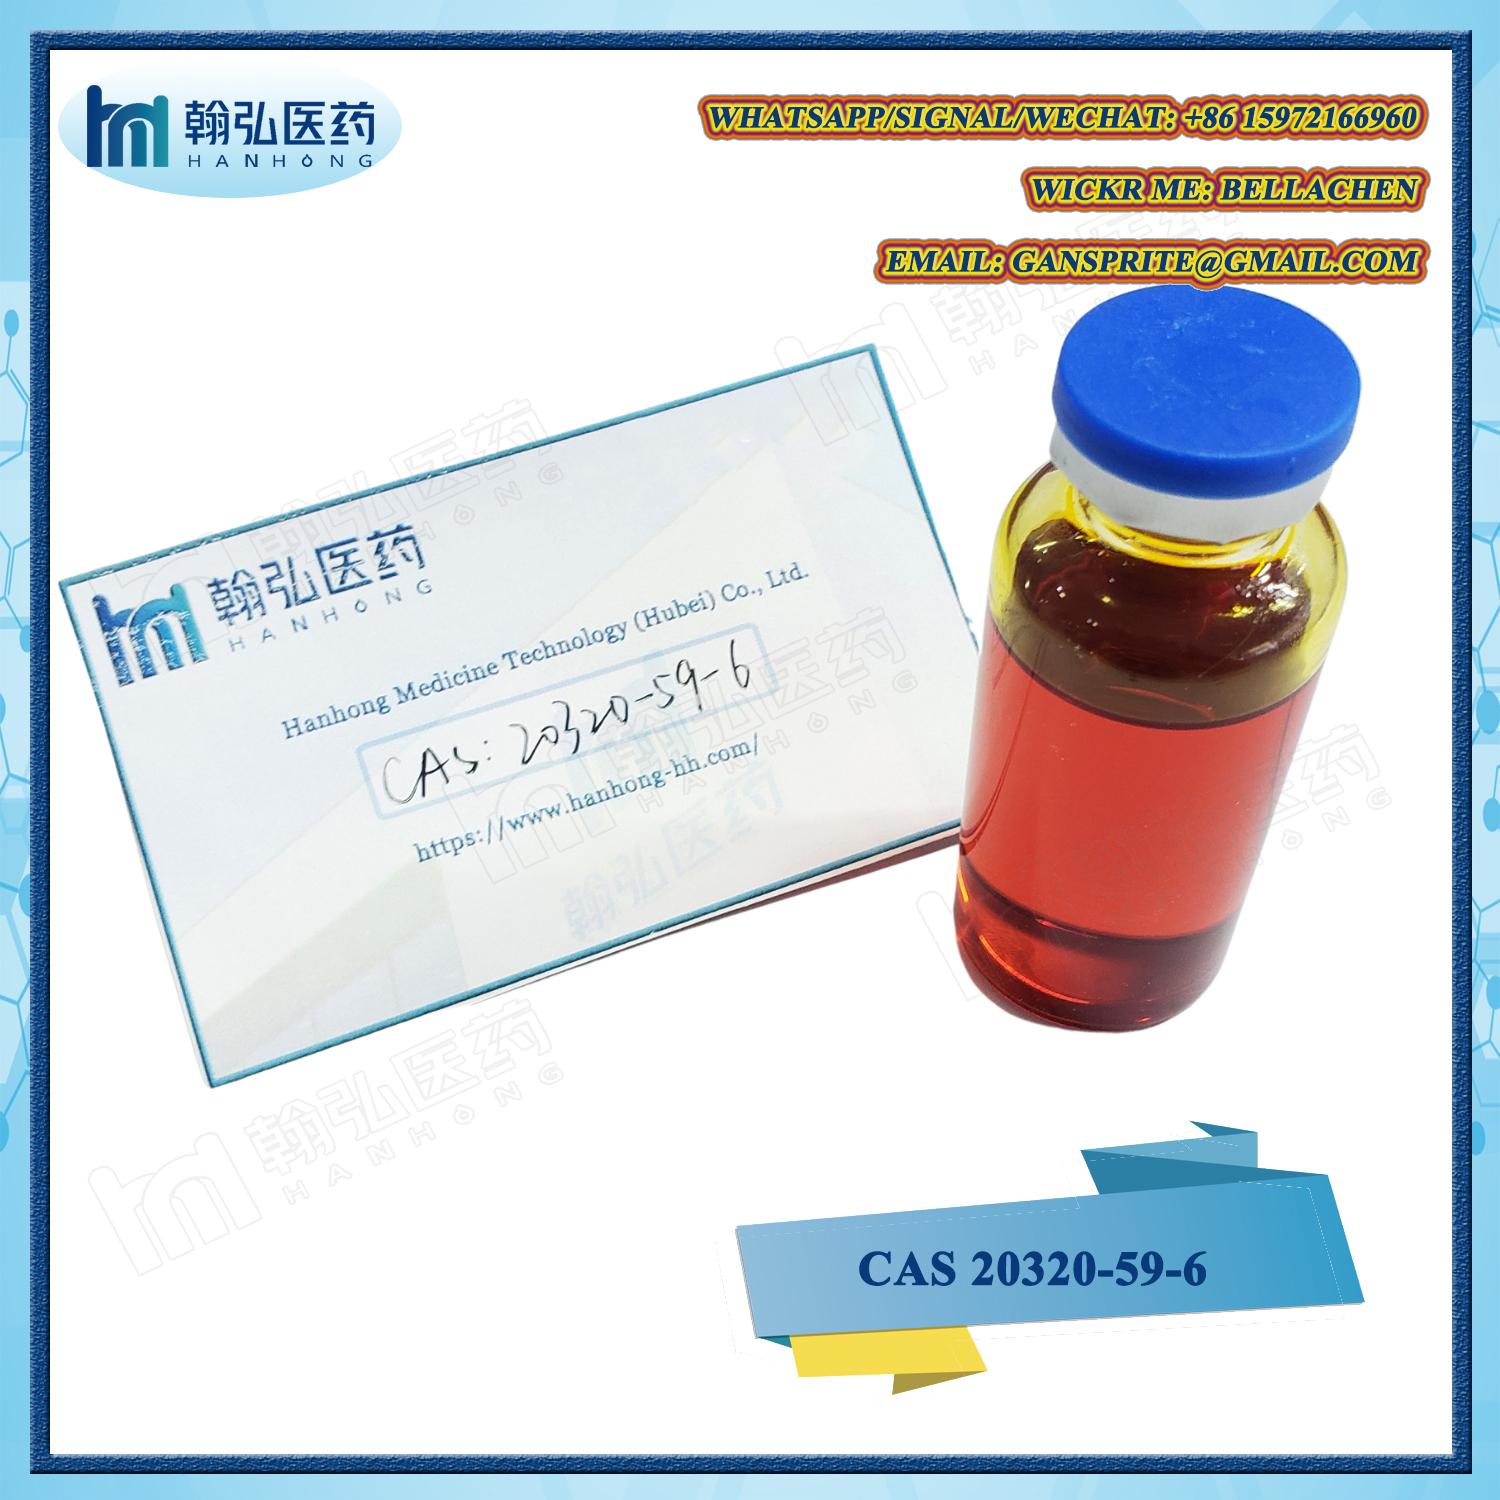 CAS 20320-59-6 Diethyl(phenylacetyl)malonate NEW BMK Oil Whatsapp/signal/wechat: +86 15972166960 Wickr Me: Bellachen